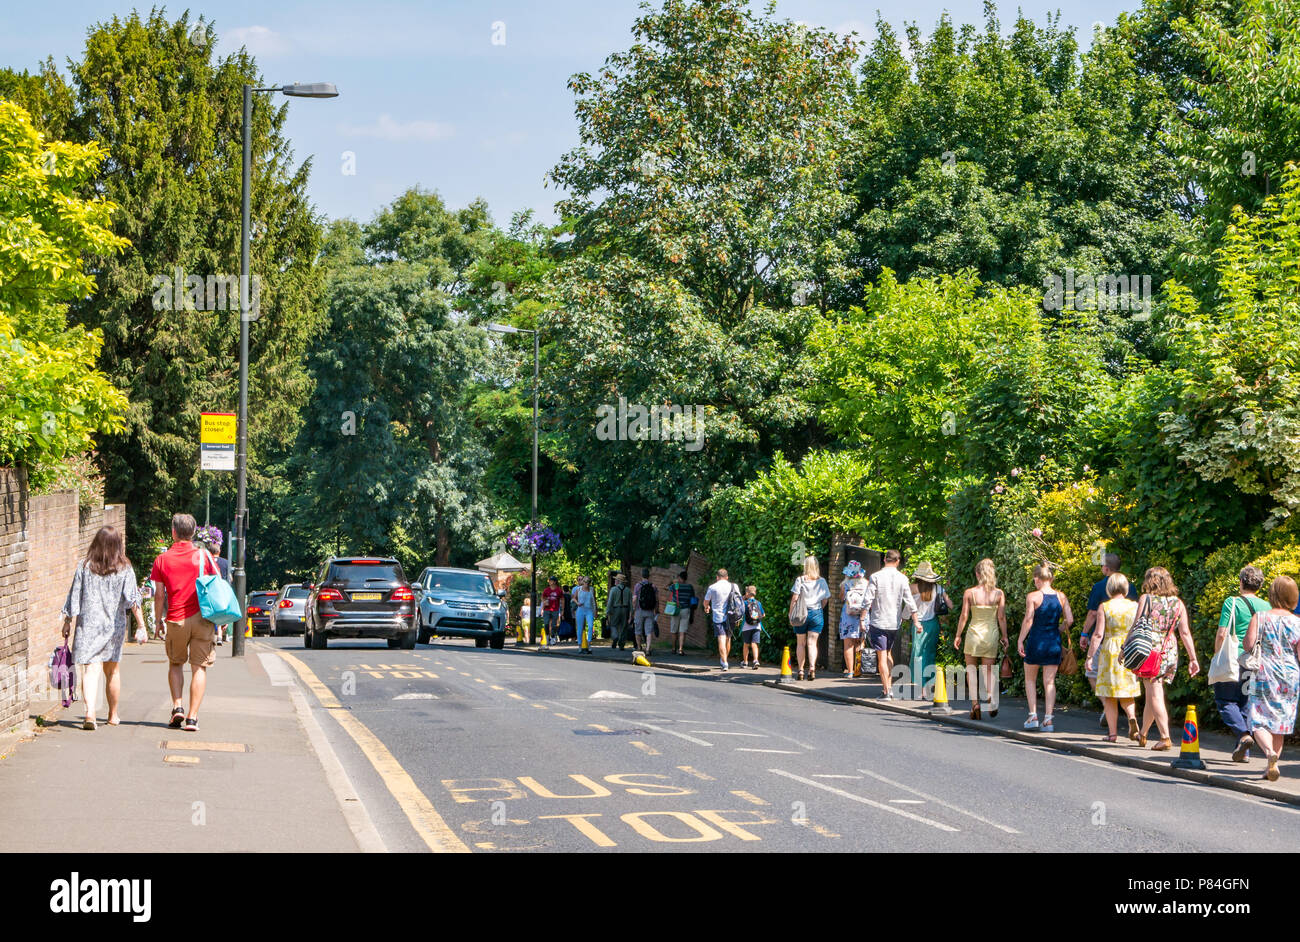 Lunga coda di persone camminando sul marciapiede per tutti England Lawn Tennis Championship in estate, Wimbledon, London, England, Regno Unito Foto Stock